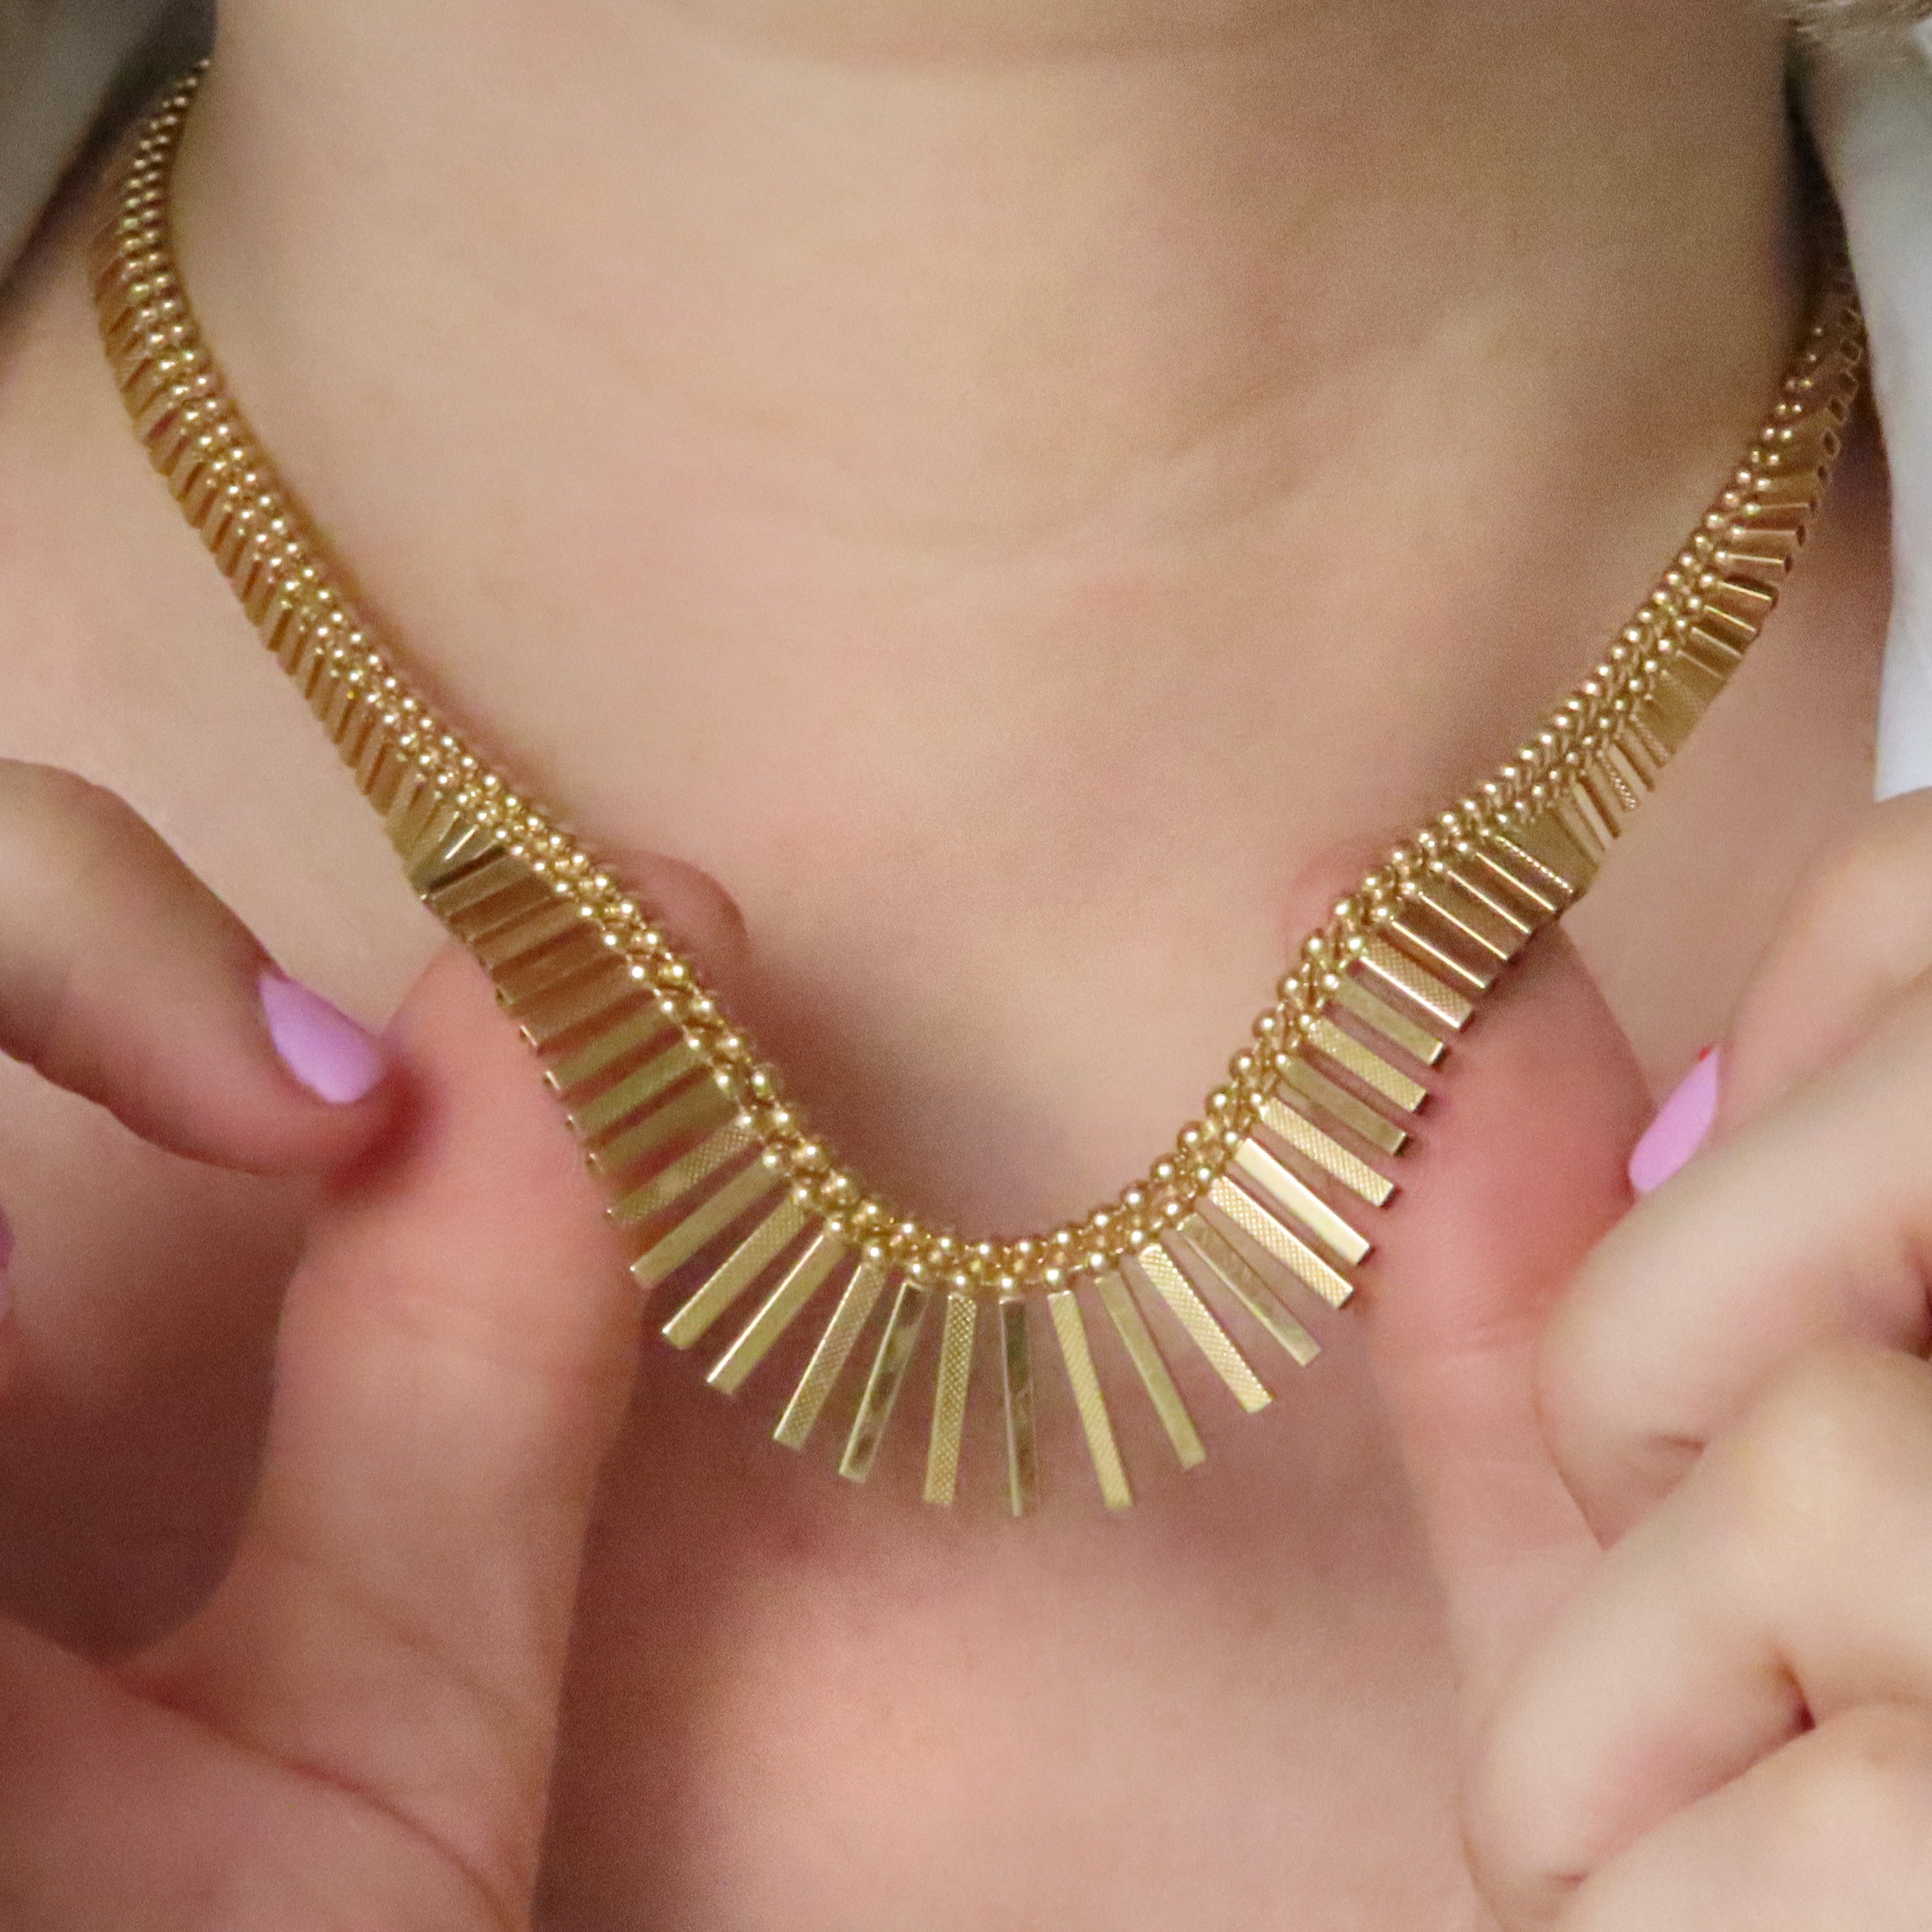 1980s cleopatra fringe necklace 9ct gold 27g unoaerre